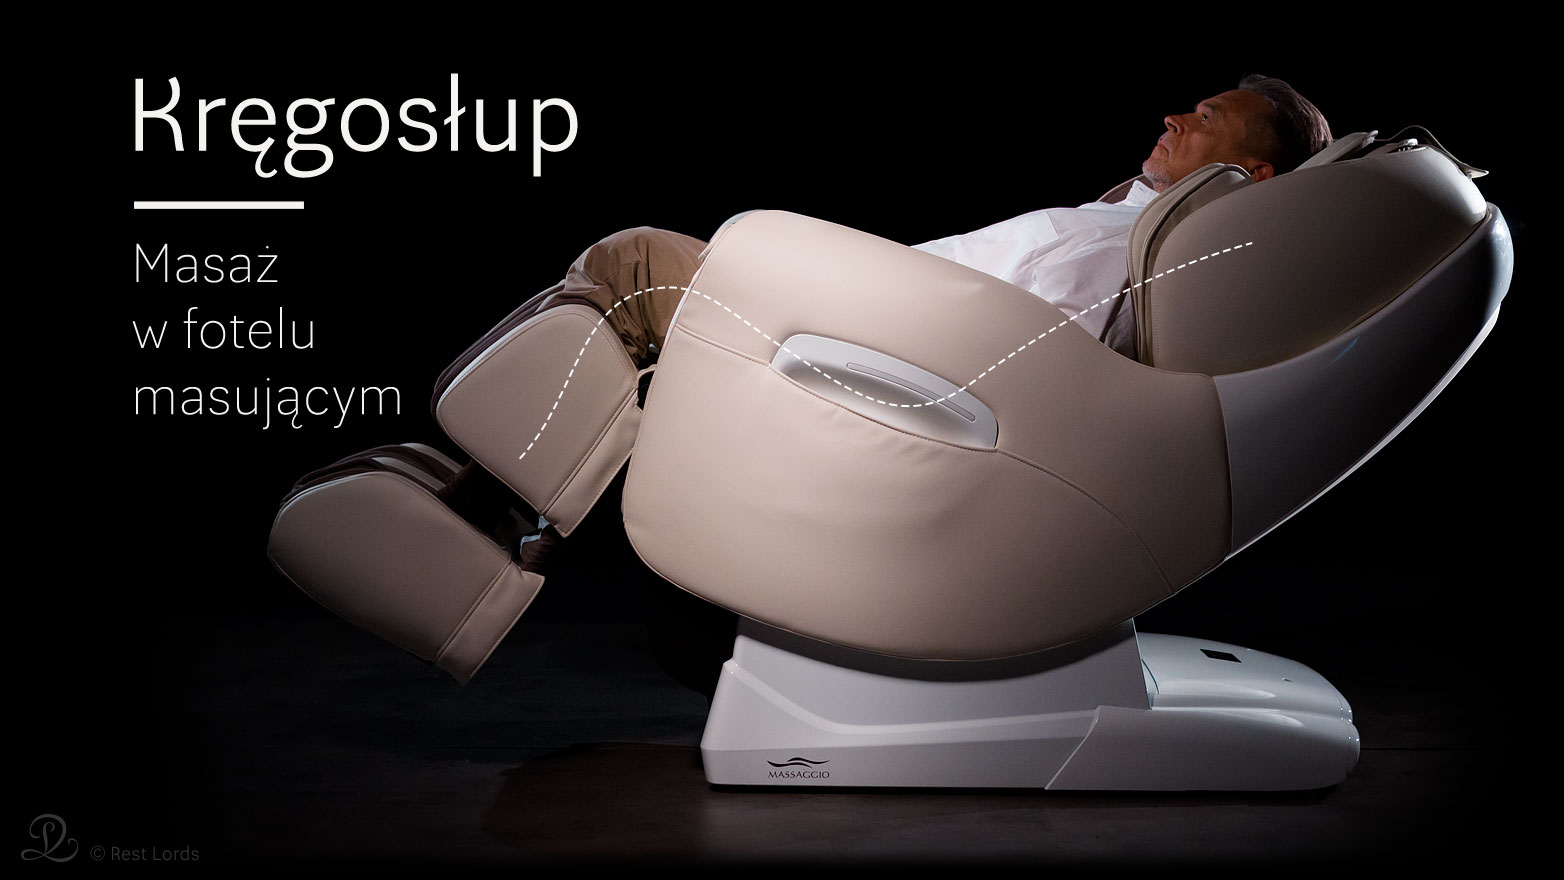 Fotel do masażu kręgosłupa